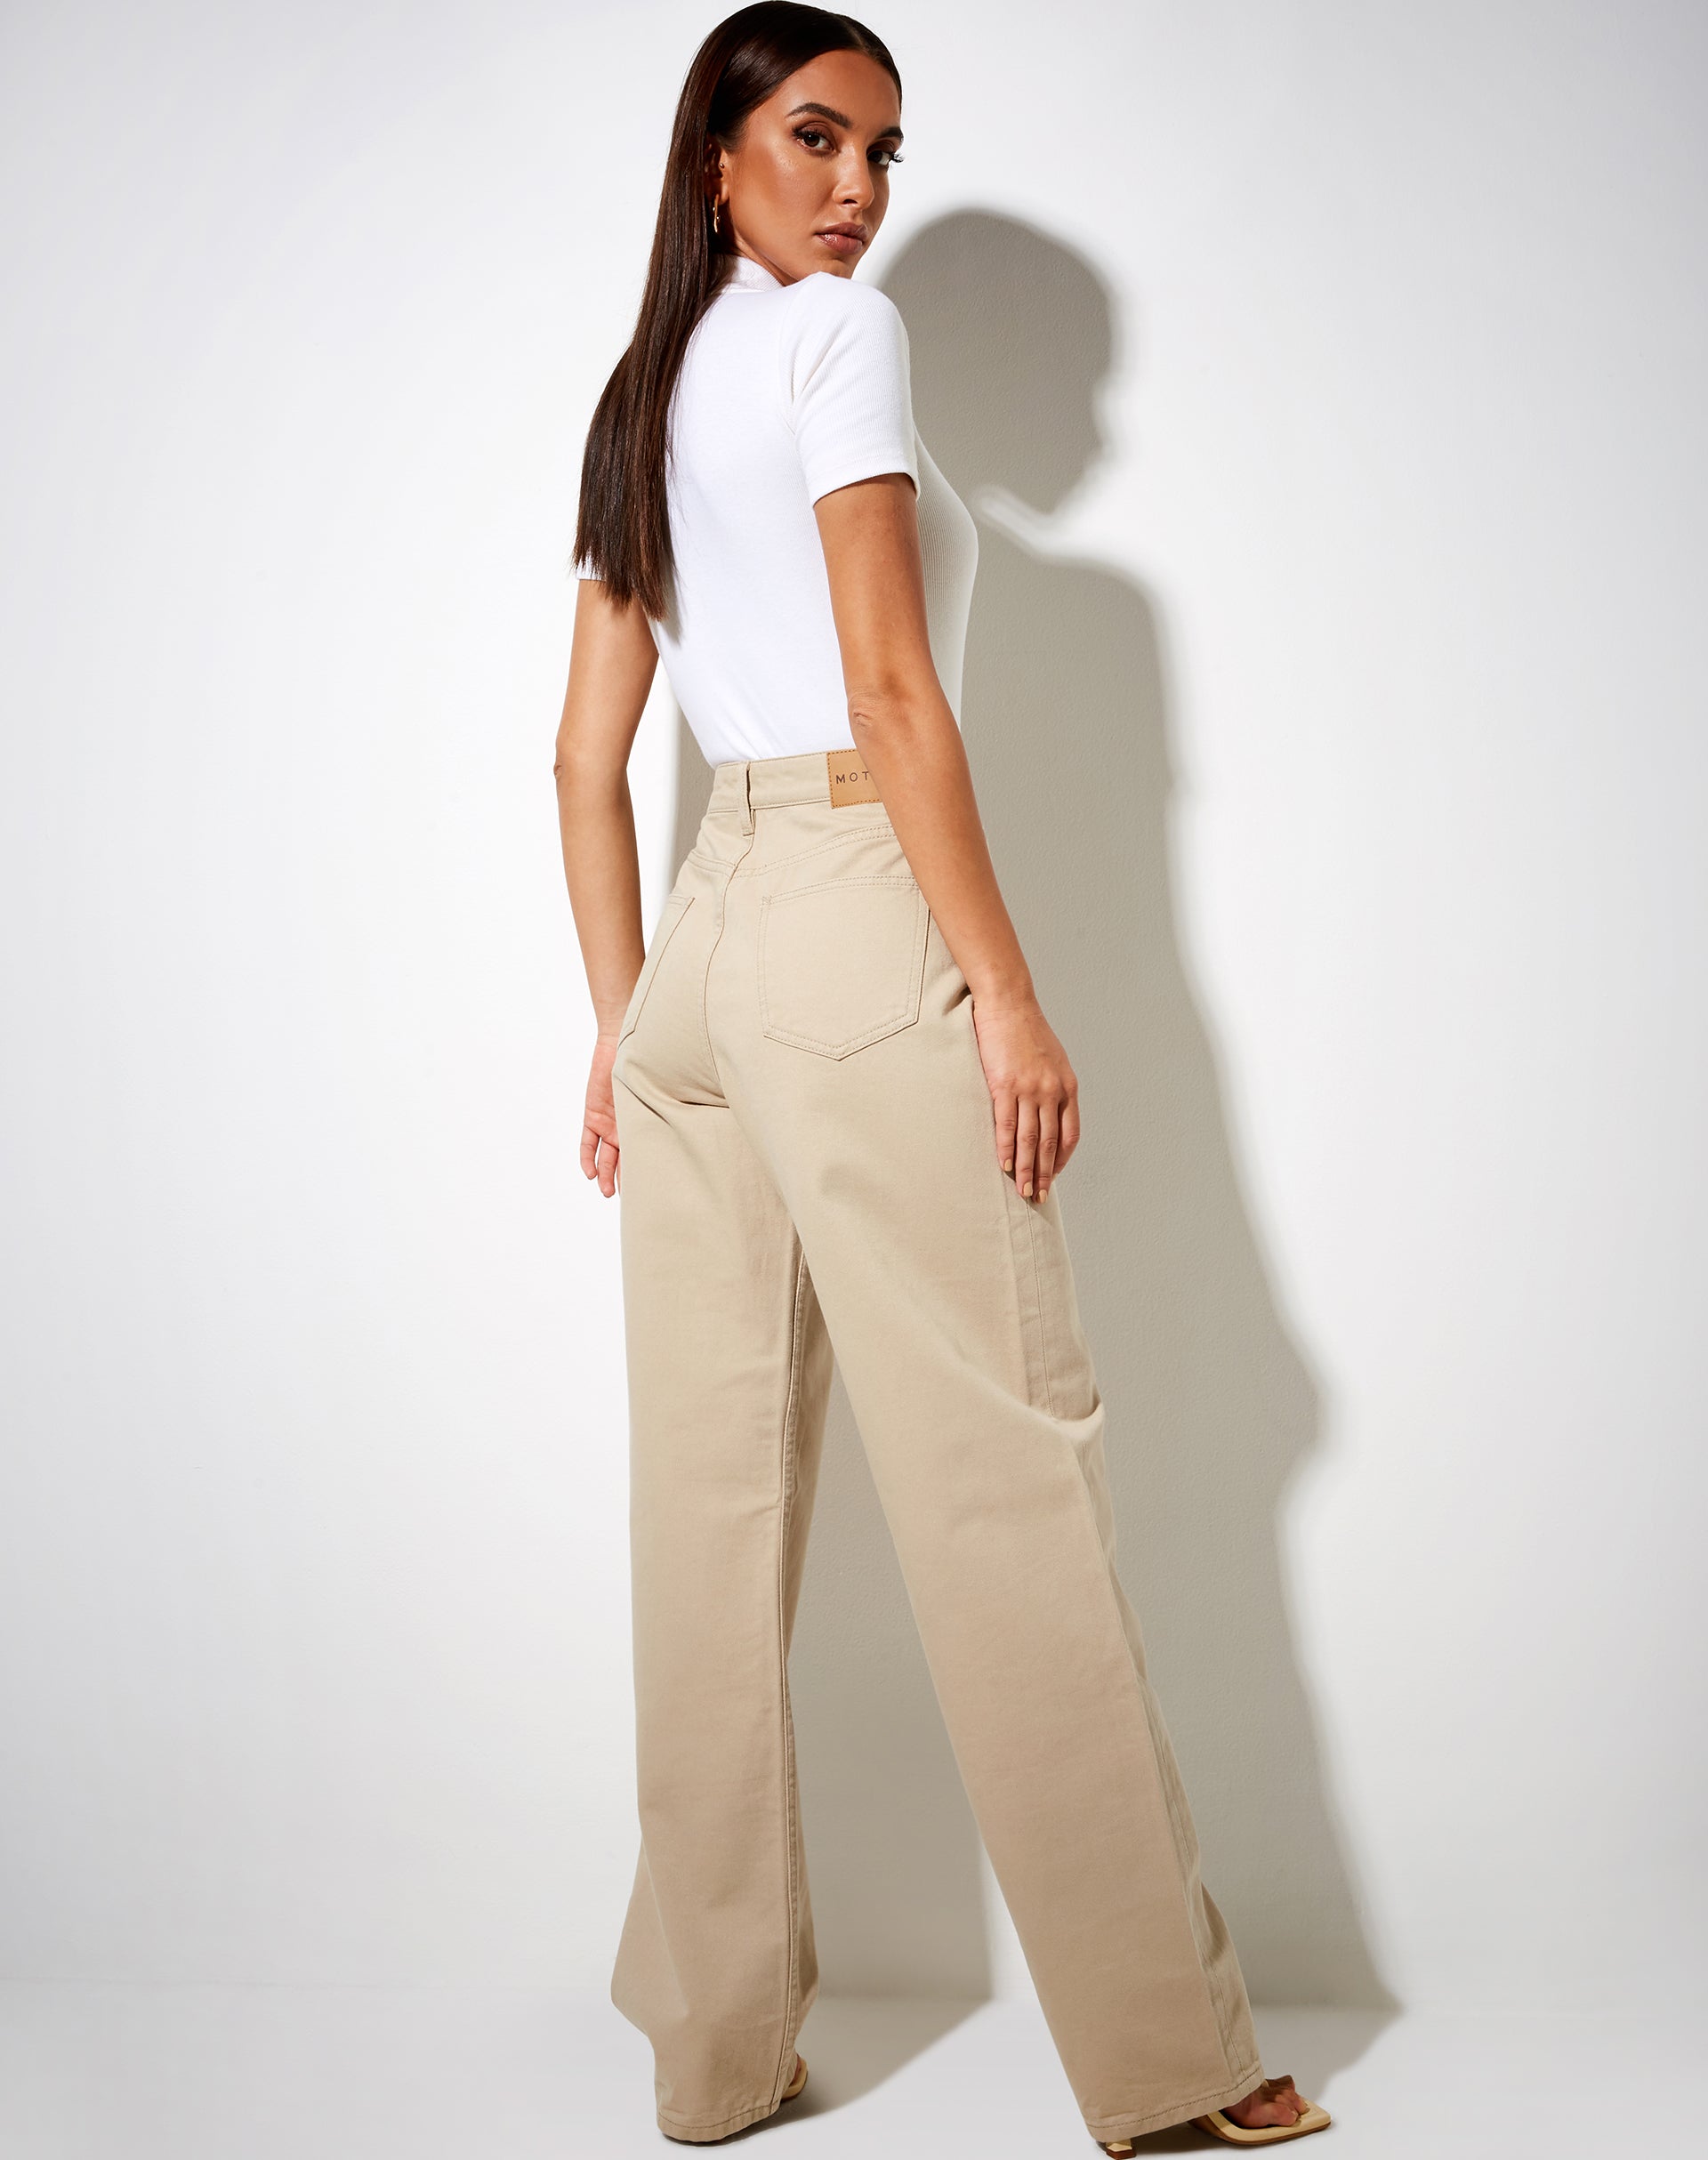 White Short Sleeve Collared Bodysuit | Delle – motelrocks.com